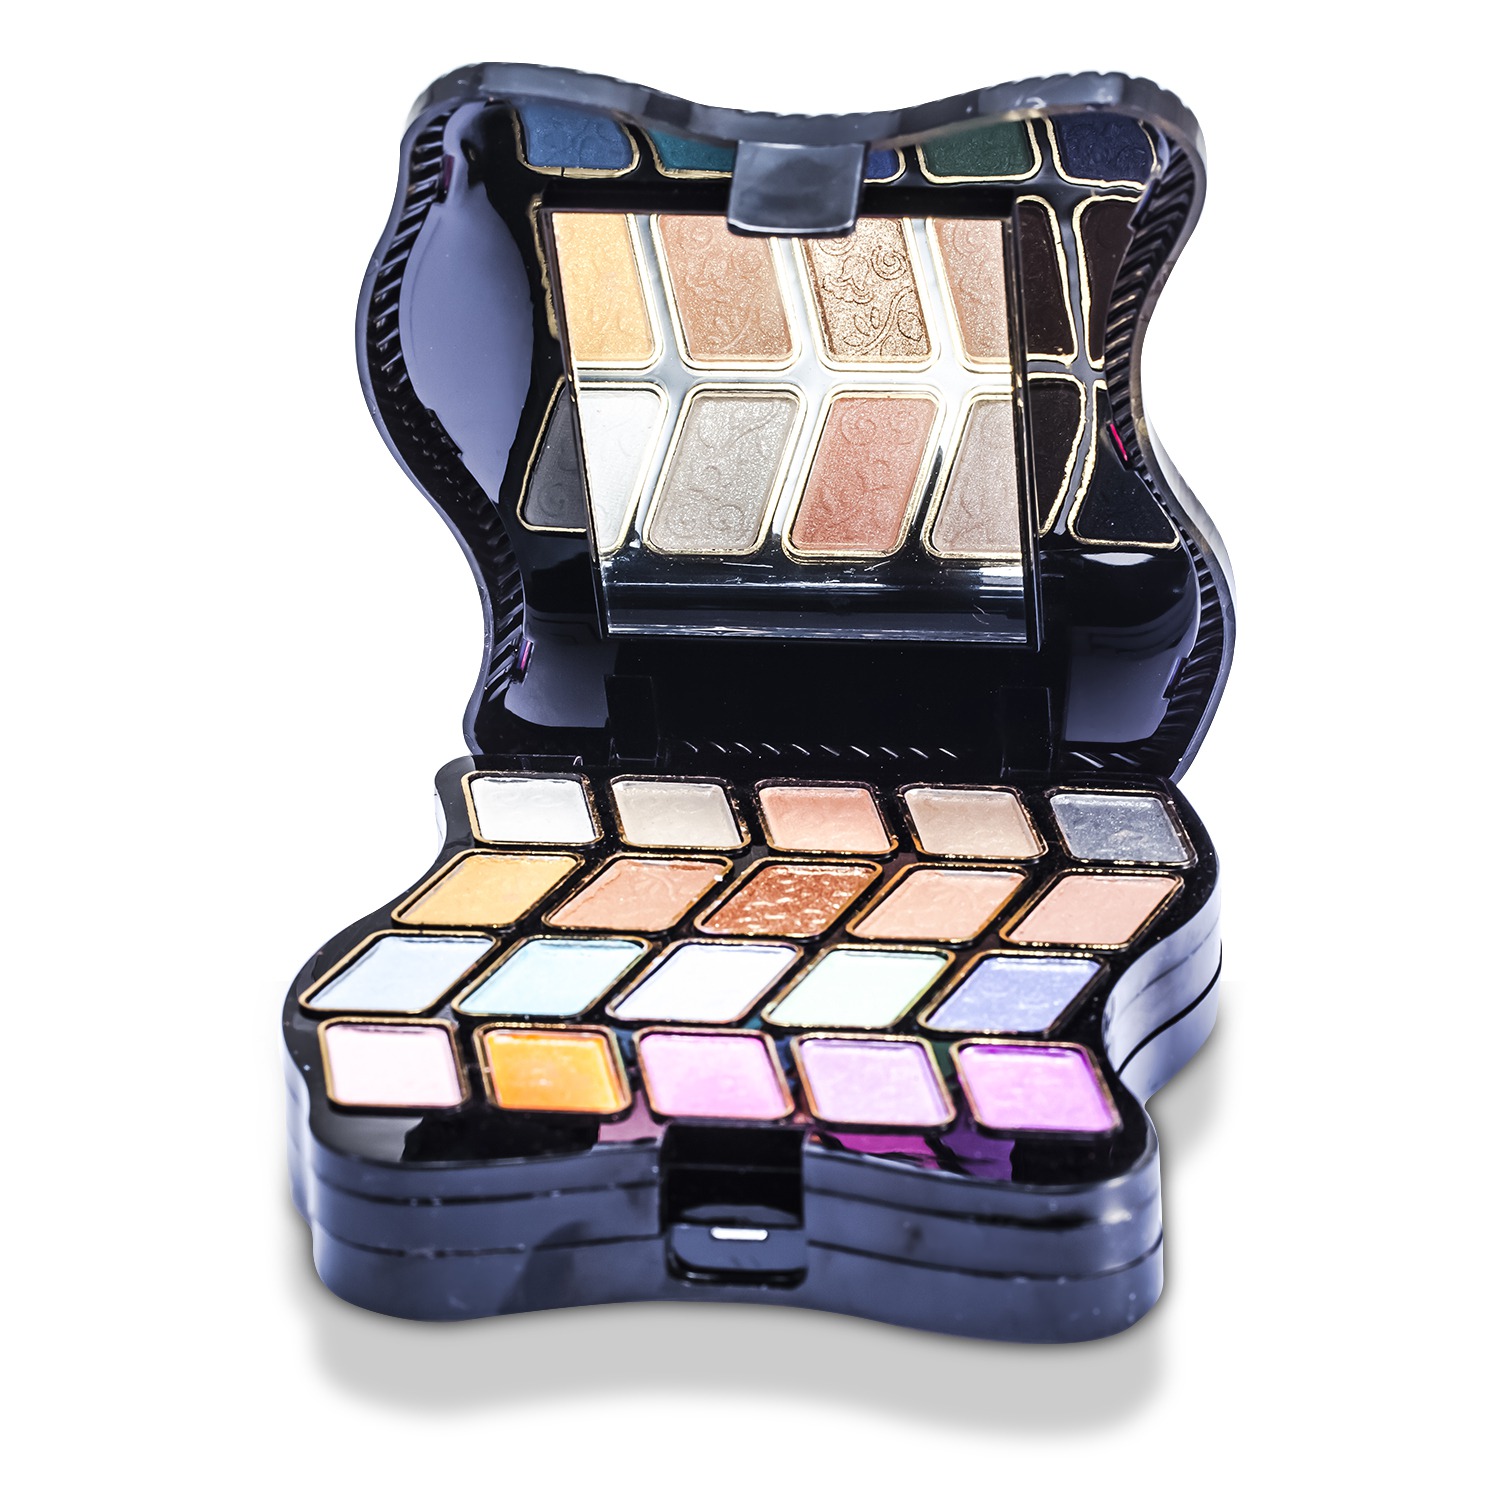 Pretty Fashion MakeUp Kit 62201: 2x Powder+ 2x Blush+ 20x Eyeshadow+ 5x Lip Color+ 3x Applicator Picture Color